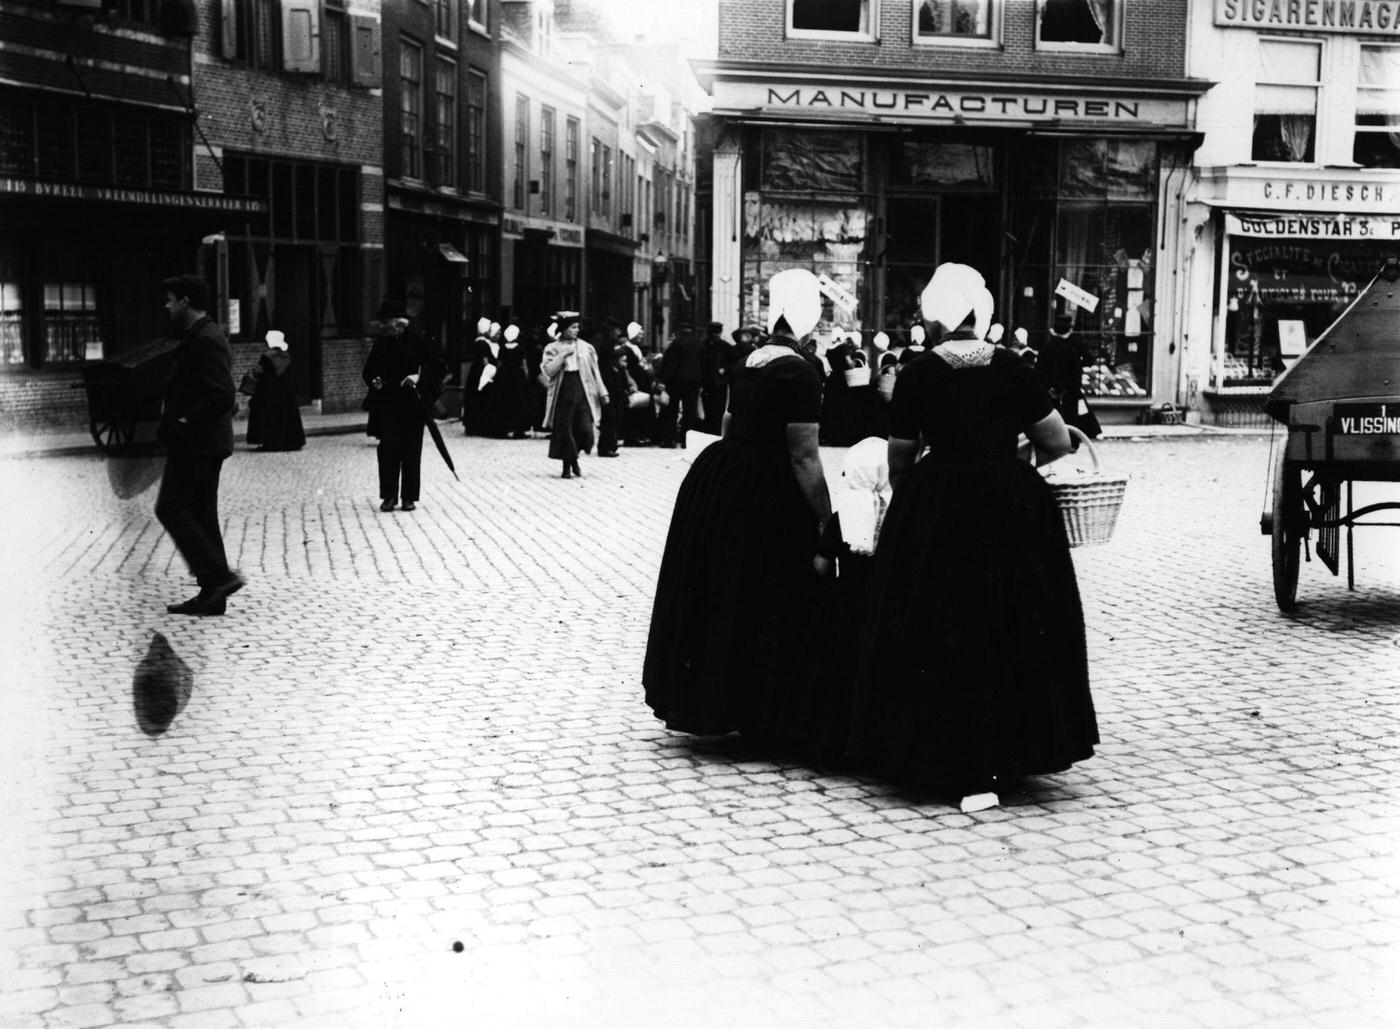 Women shopping in a Dutch town, Netherlands, 1900.